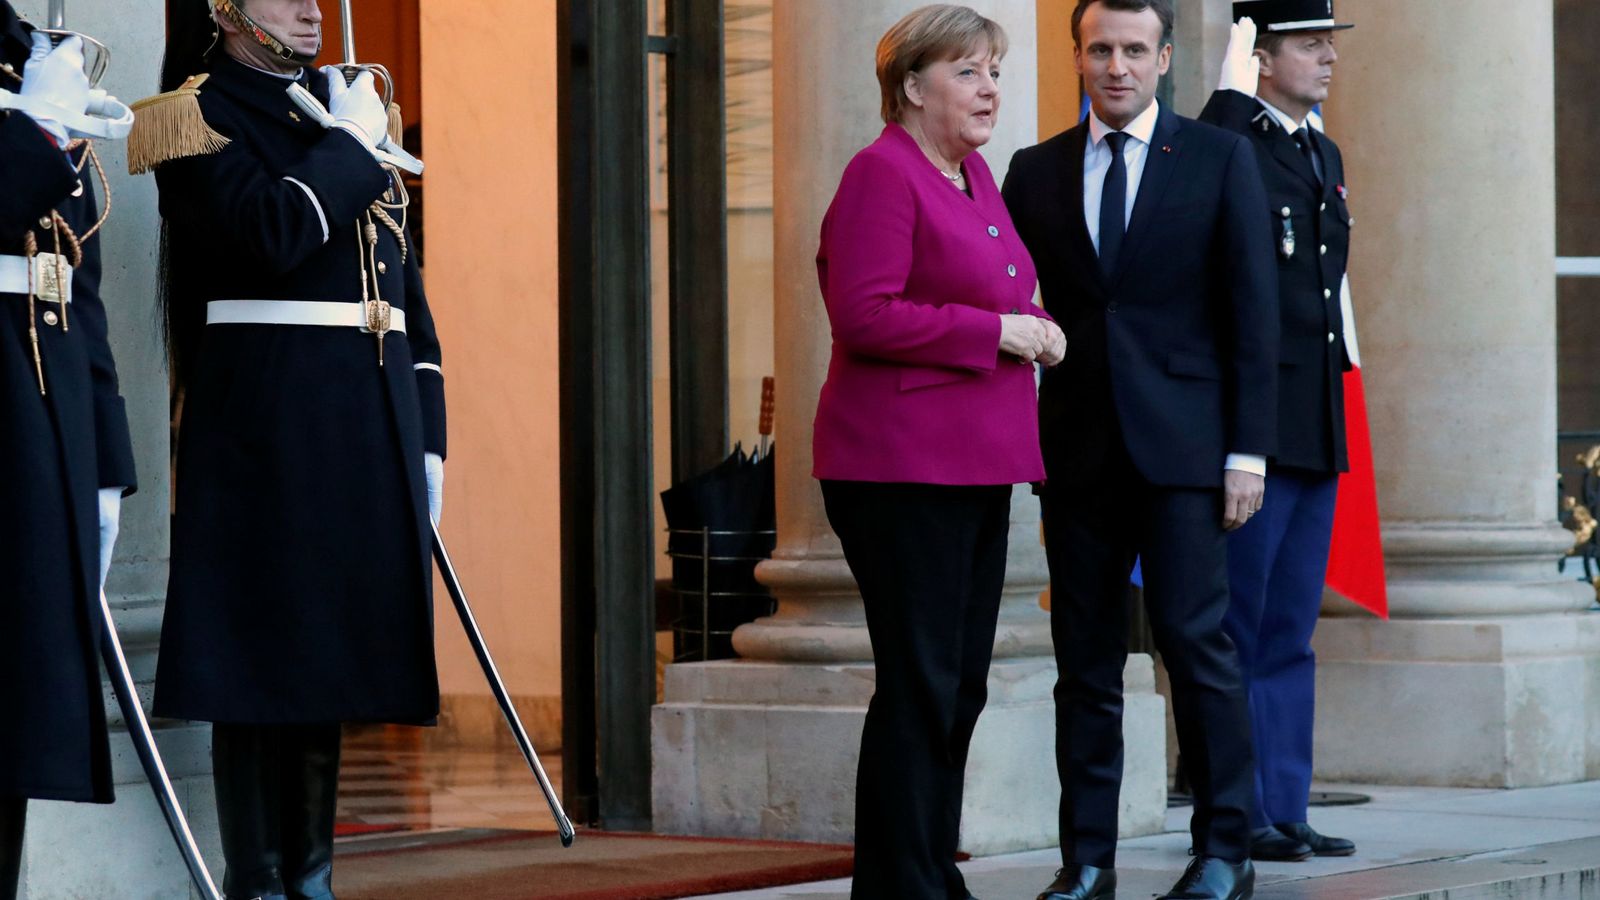 Foto: Emmanuel Macron recibe a Angela Merkel en el Palacio del Elíseo, en París. (Reuters)